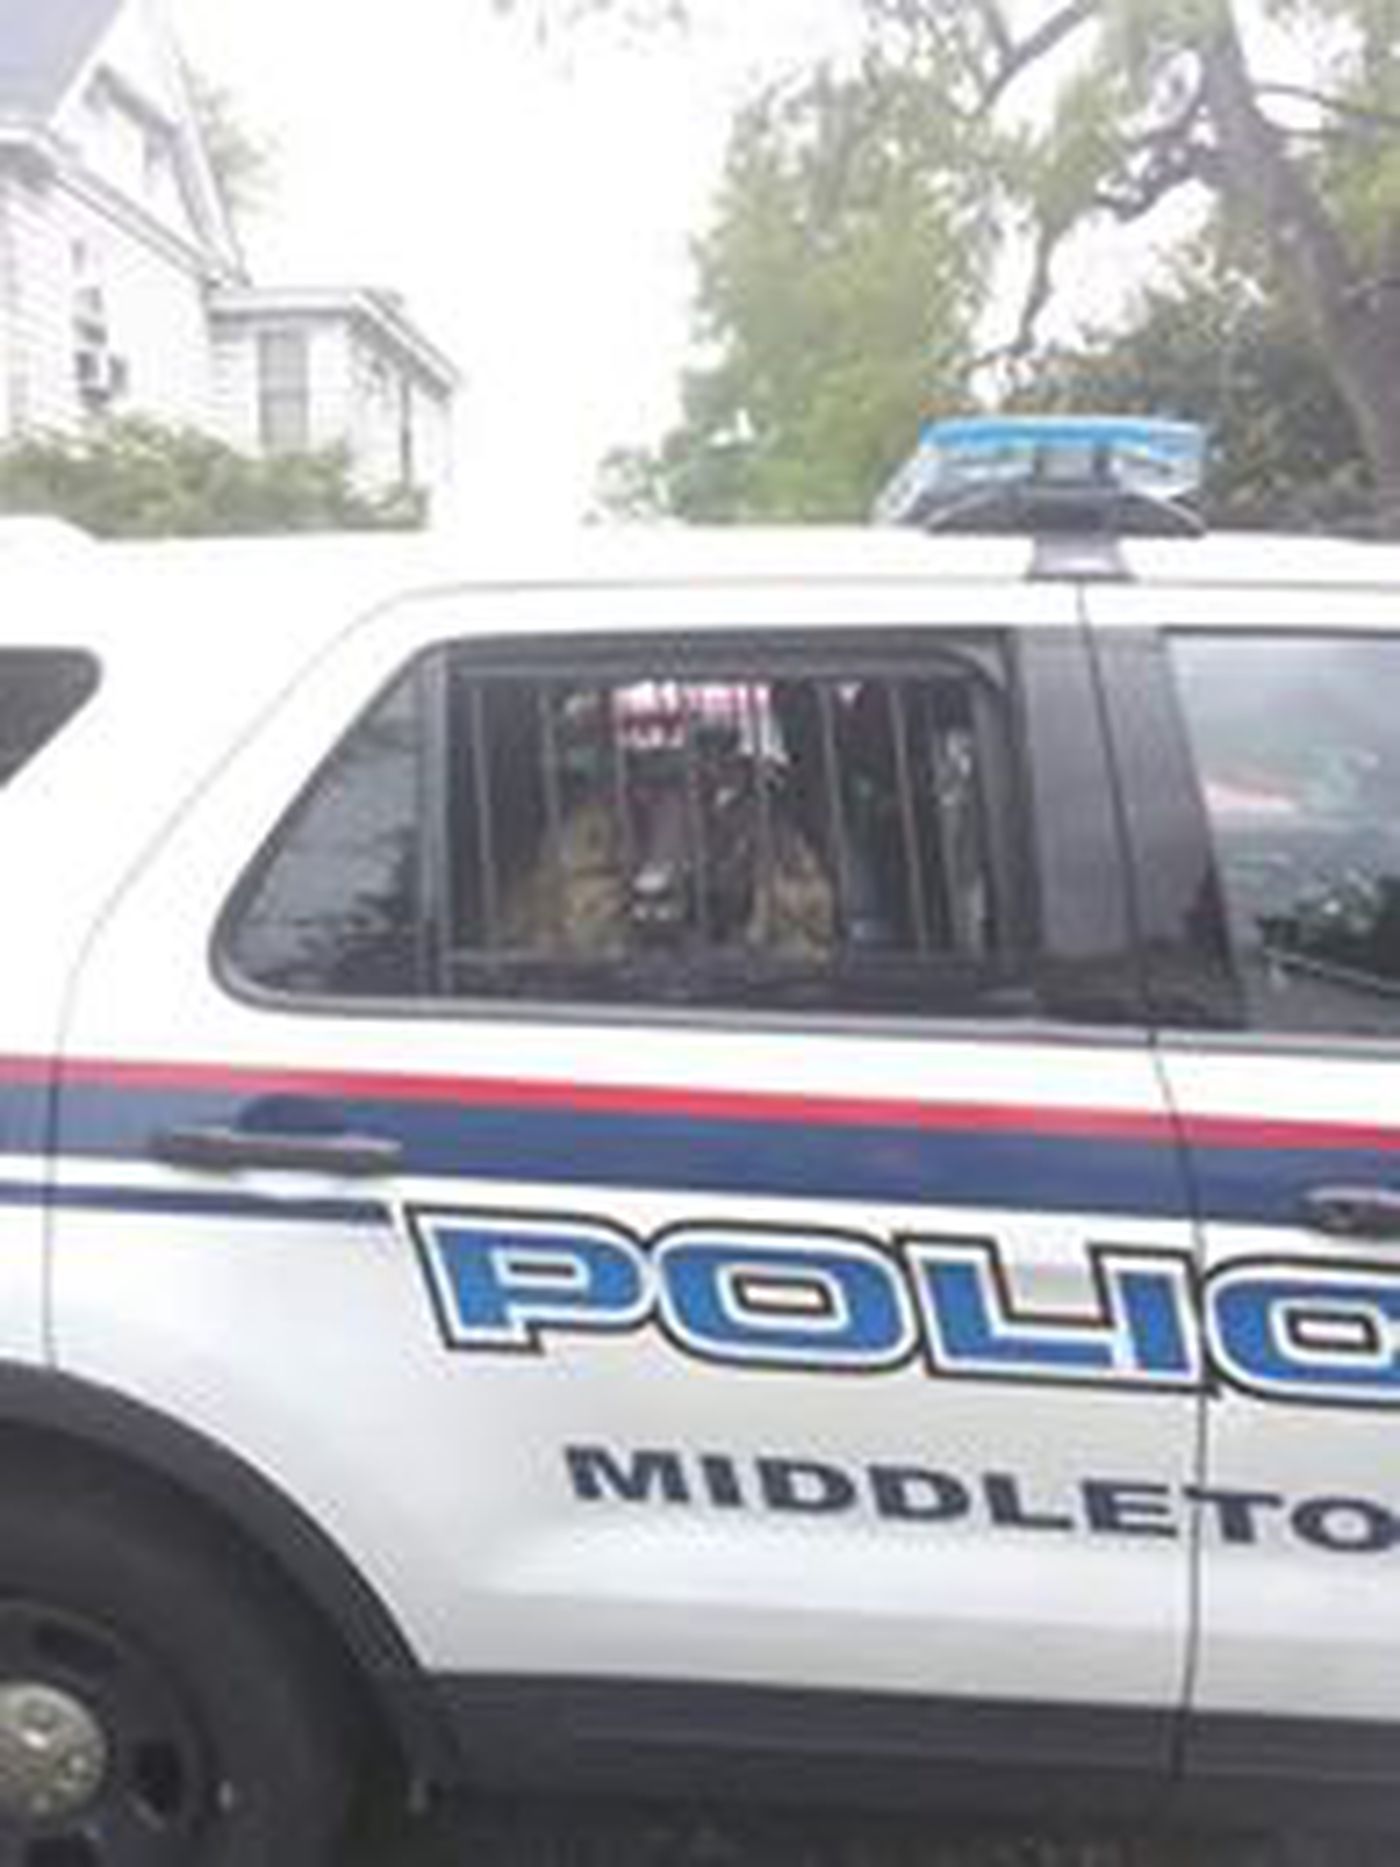 sheep in a police car - Polic Middleto